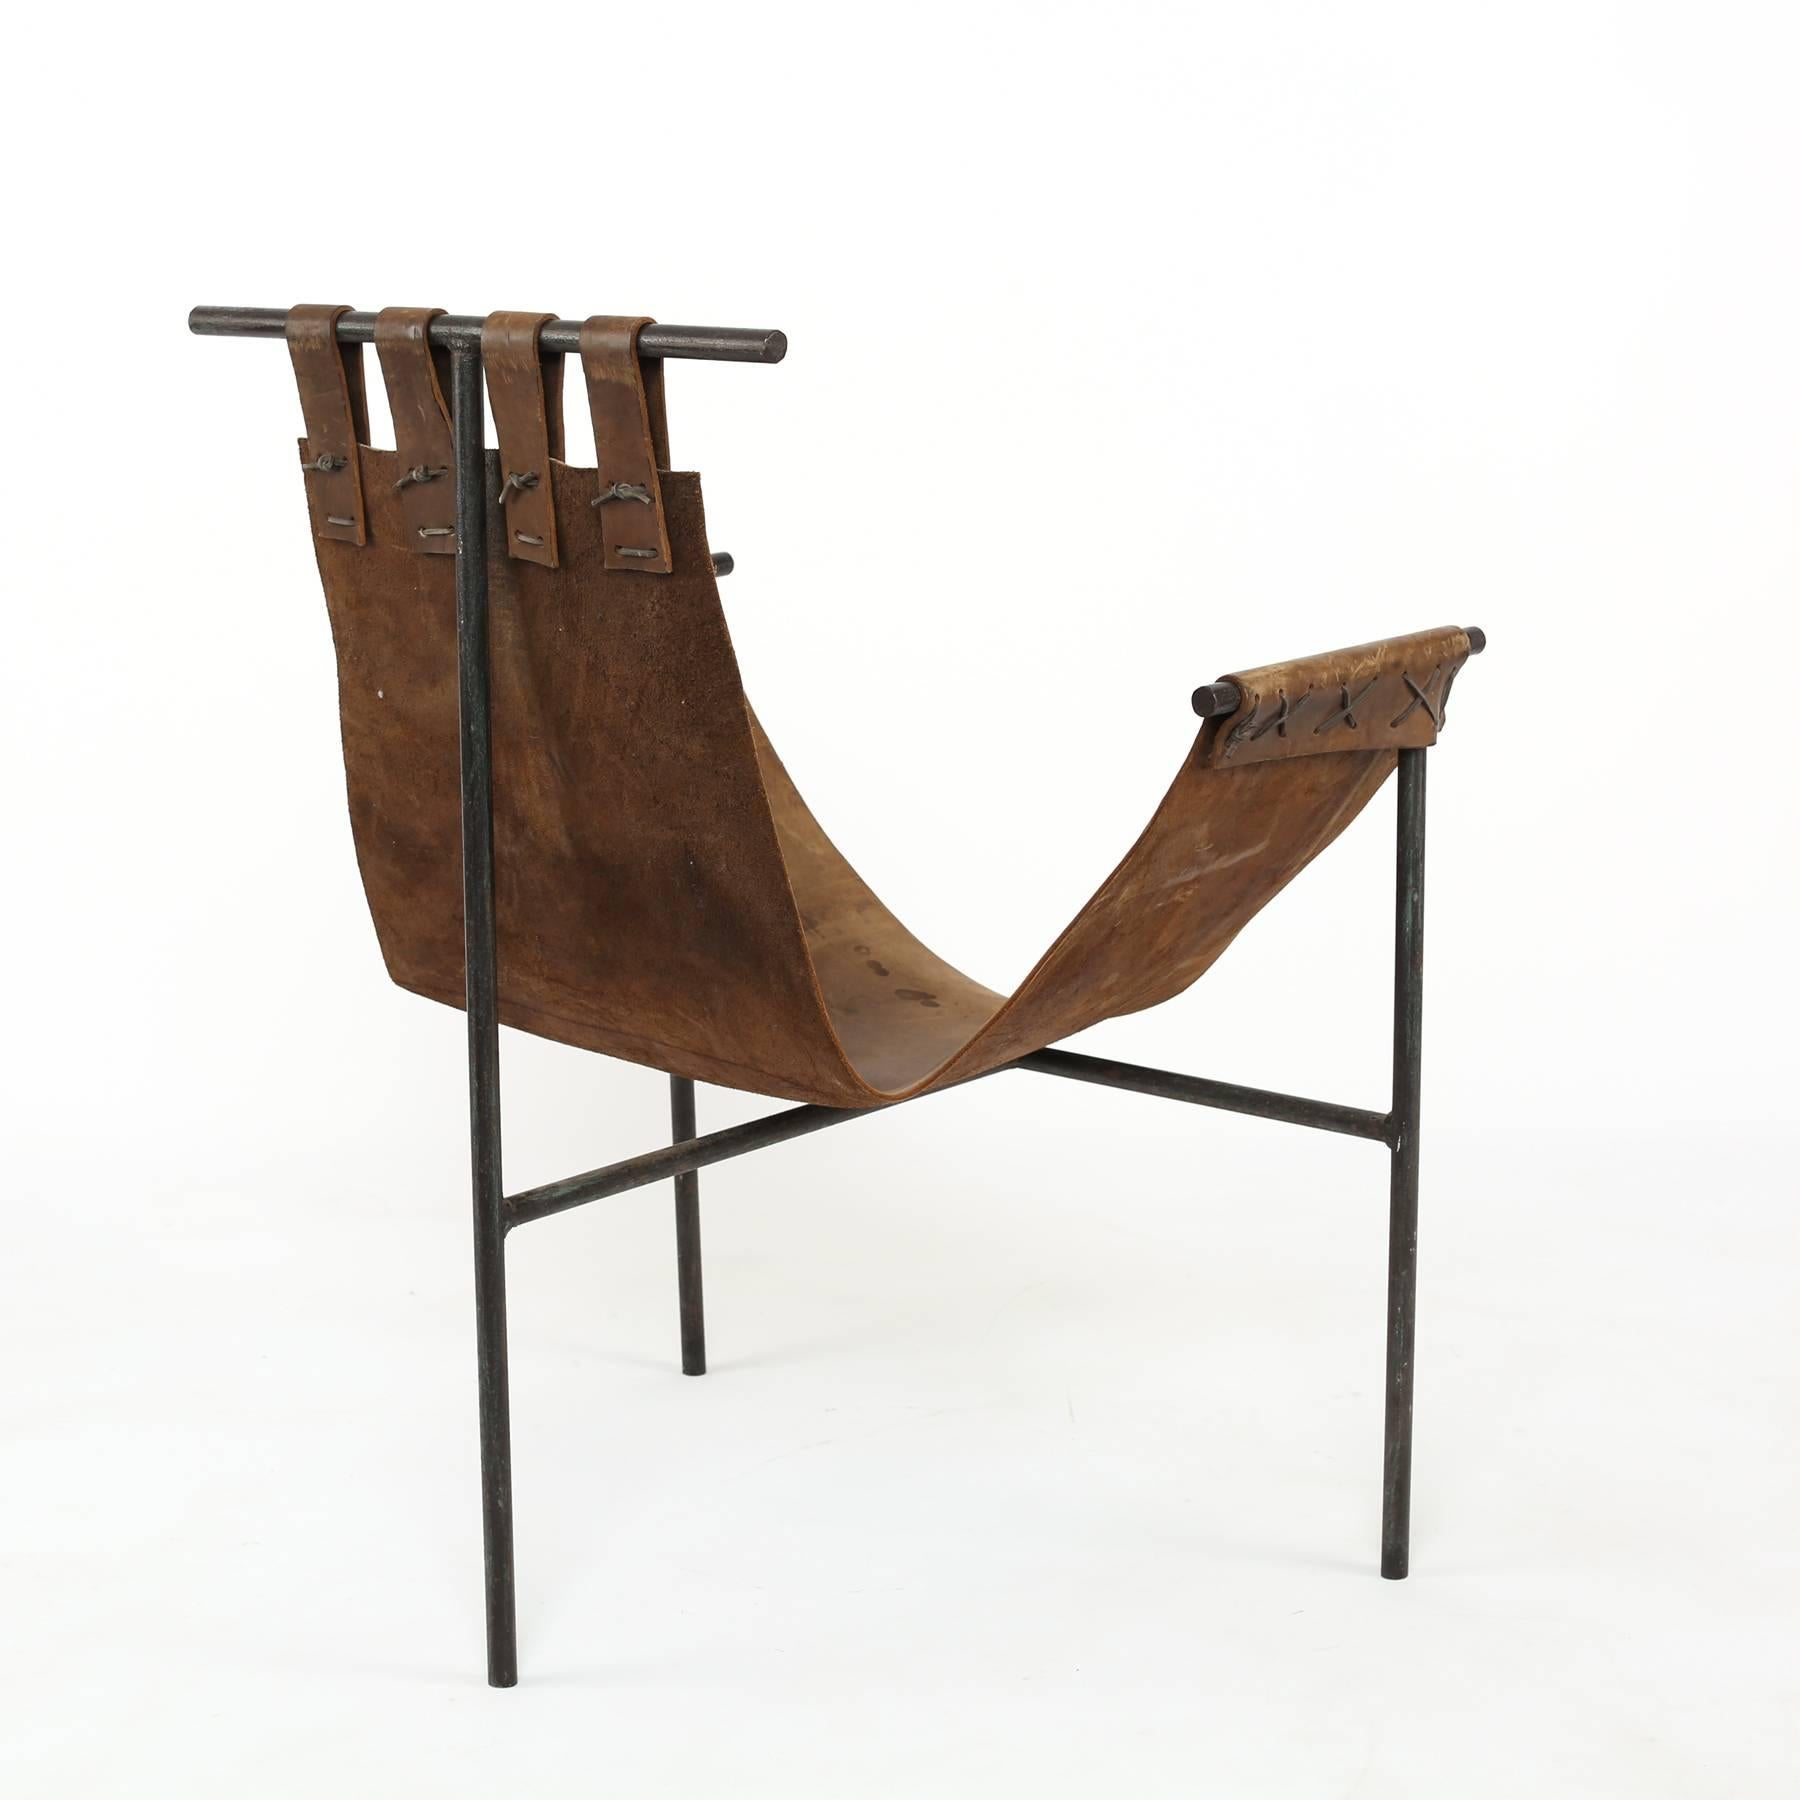 Sling-Stuhl aus Eisen und Sattelleder:: ca. Anfang der 1970er Jahre. Dieses Beispiel wurde von Bill Tull:: einem Architekten aus Arizona:: entworfen. Sie hat einen schön patinierten Lederriemen mit einem dreibeinigen Eisenrahmen.